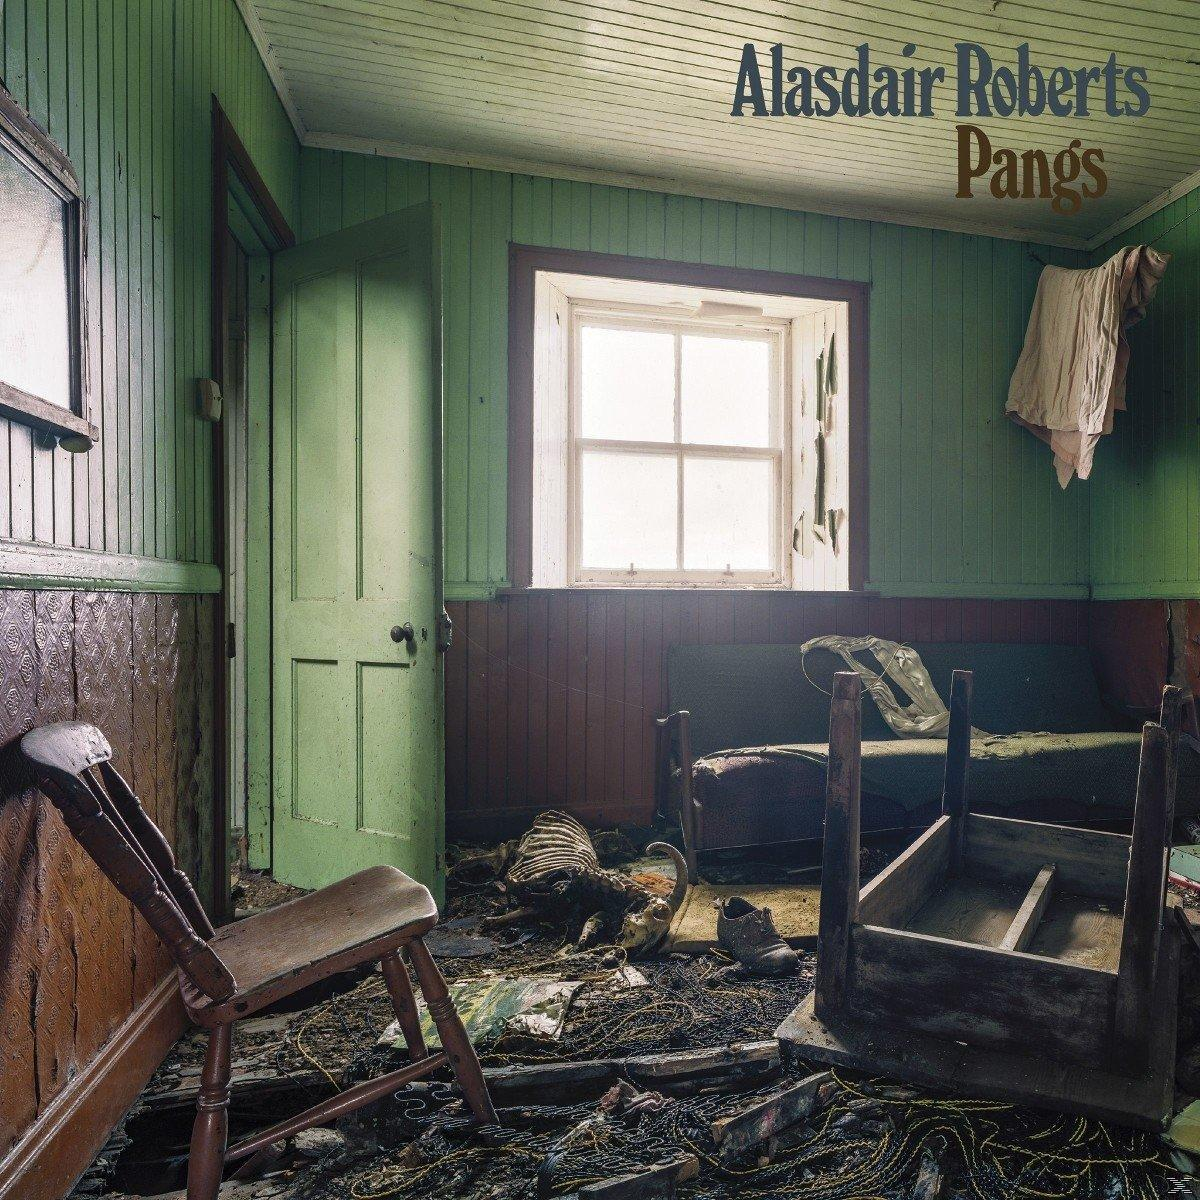 Pangs Alasdair (CD) Roberts - -